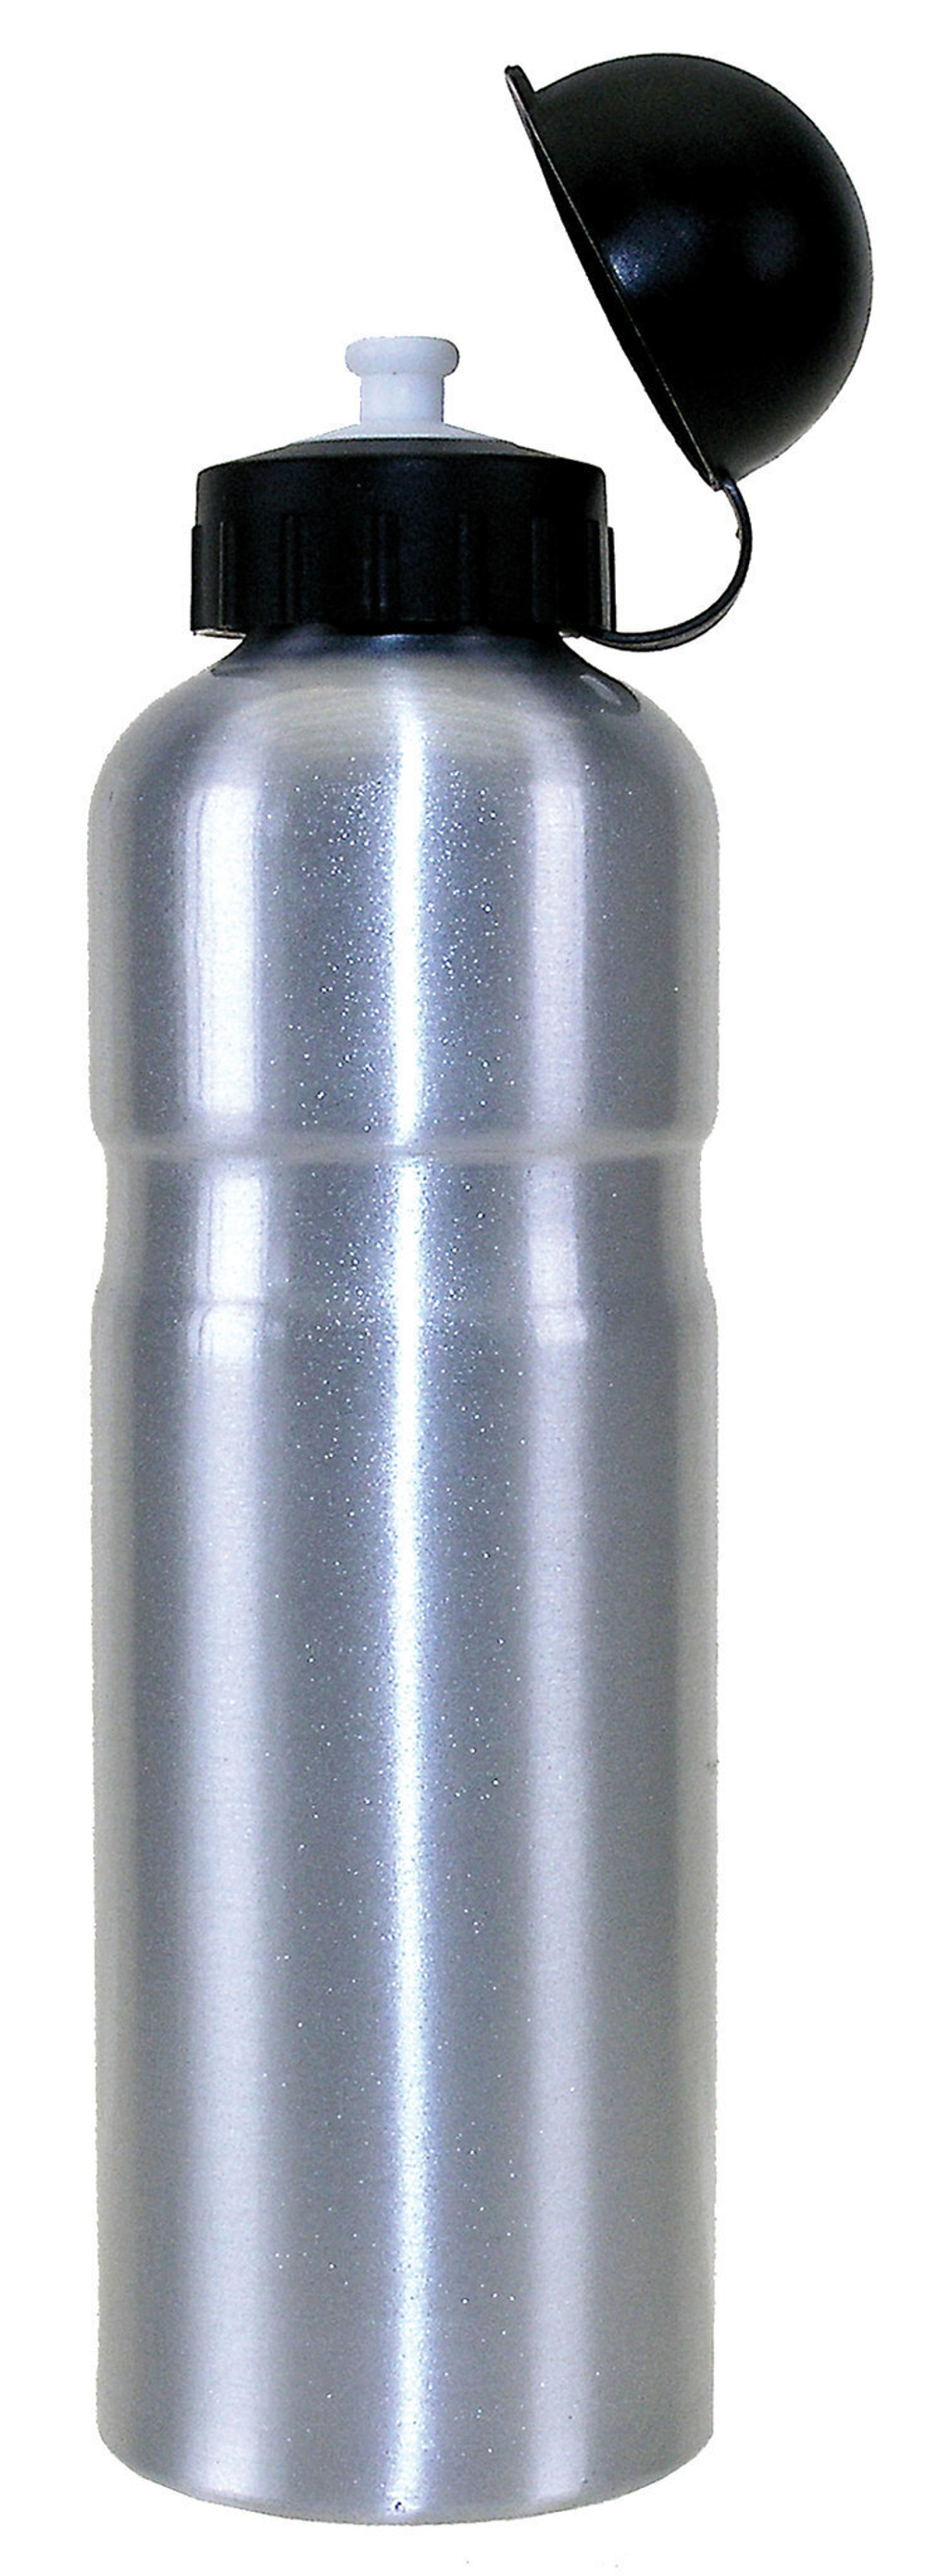 Фляга для велосипеда M-WAVE 750 мл алюминий с крышкой серебро